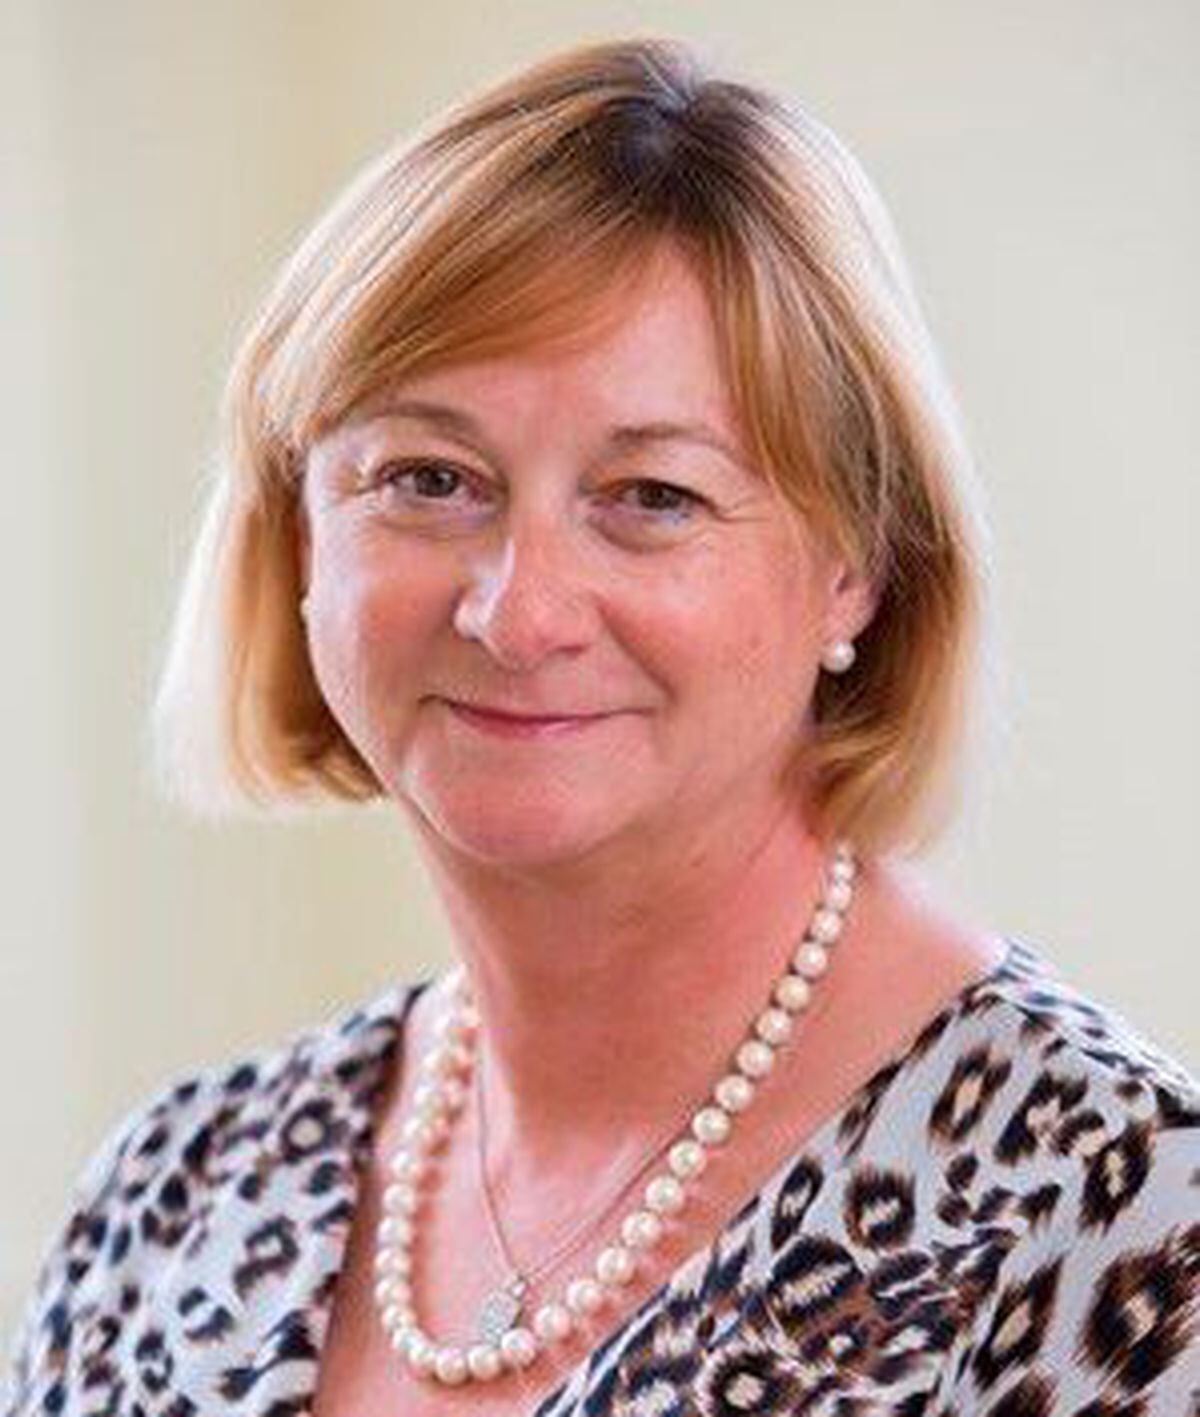 Liver Trust chief executive Pamela Healy